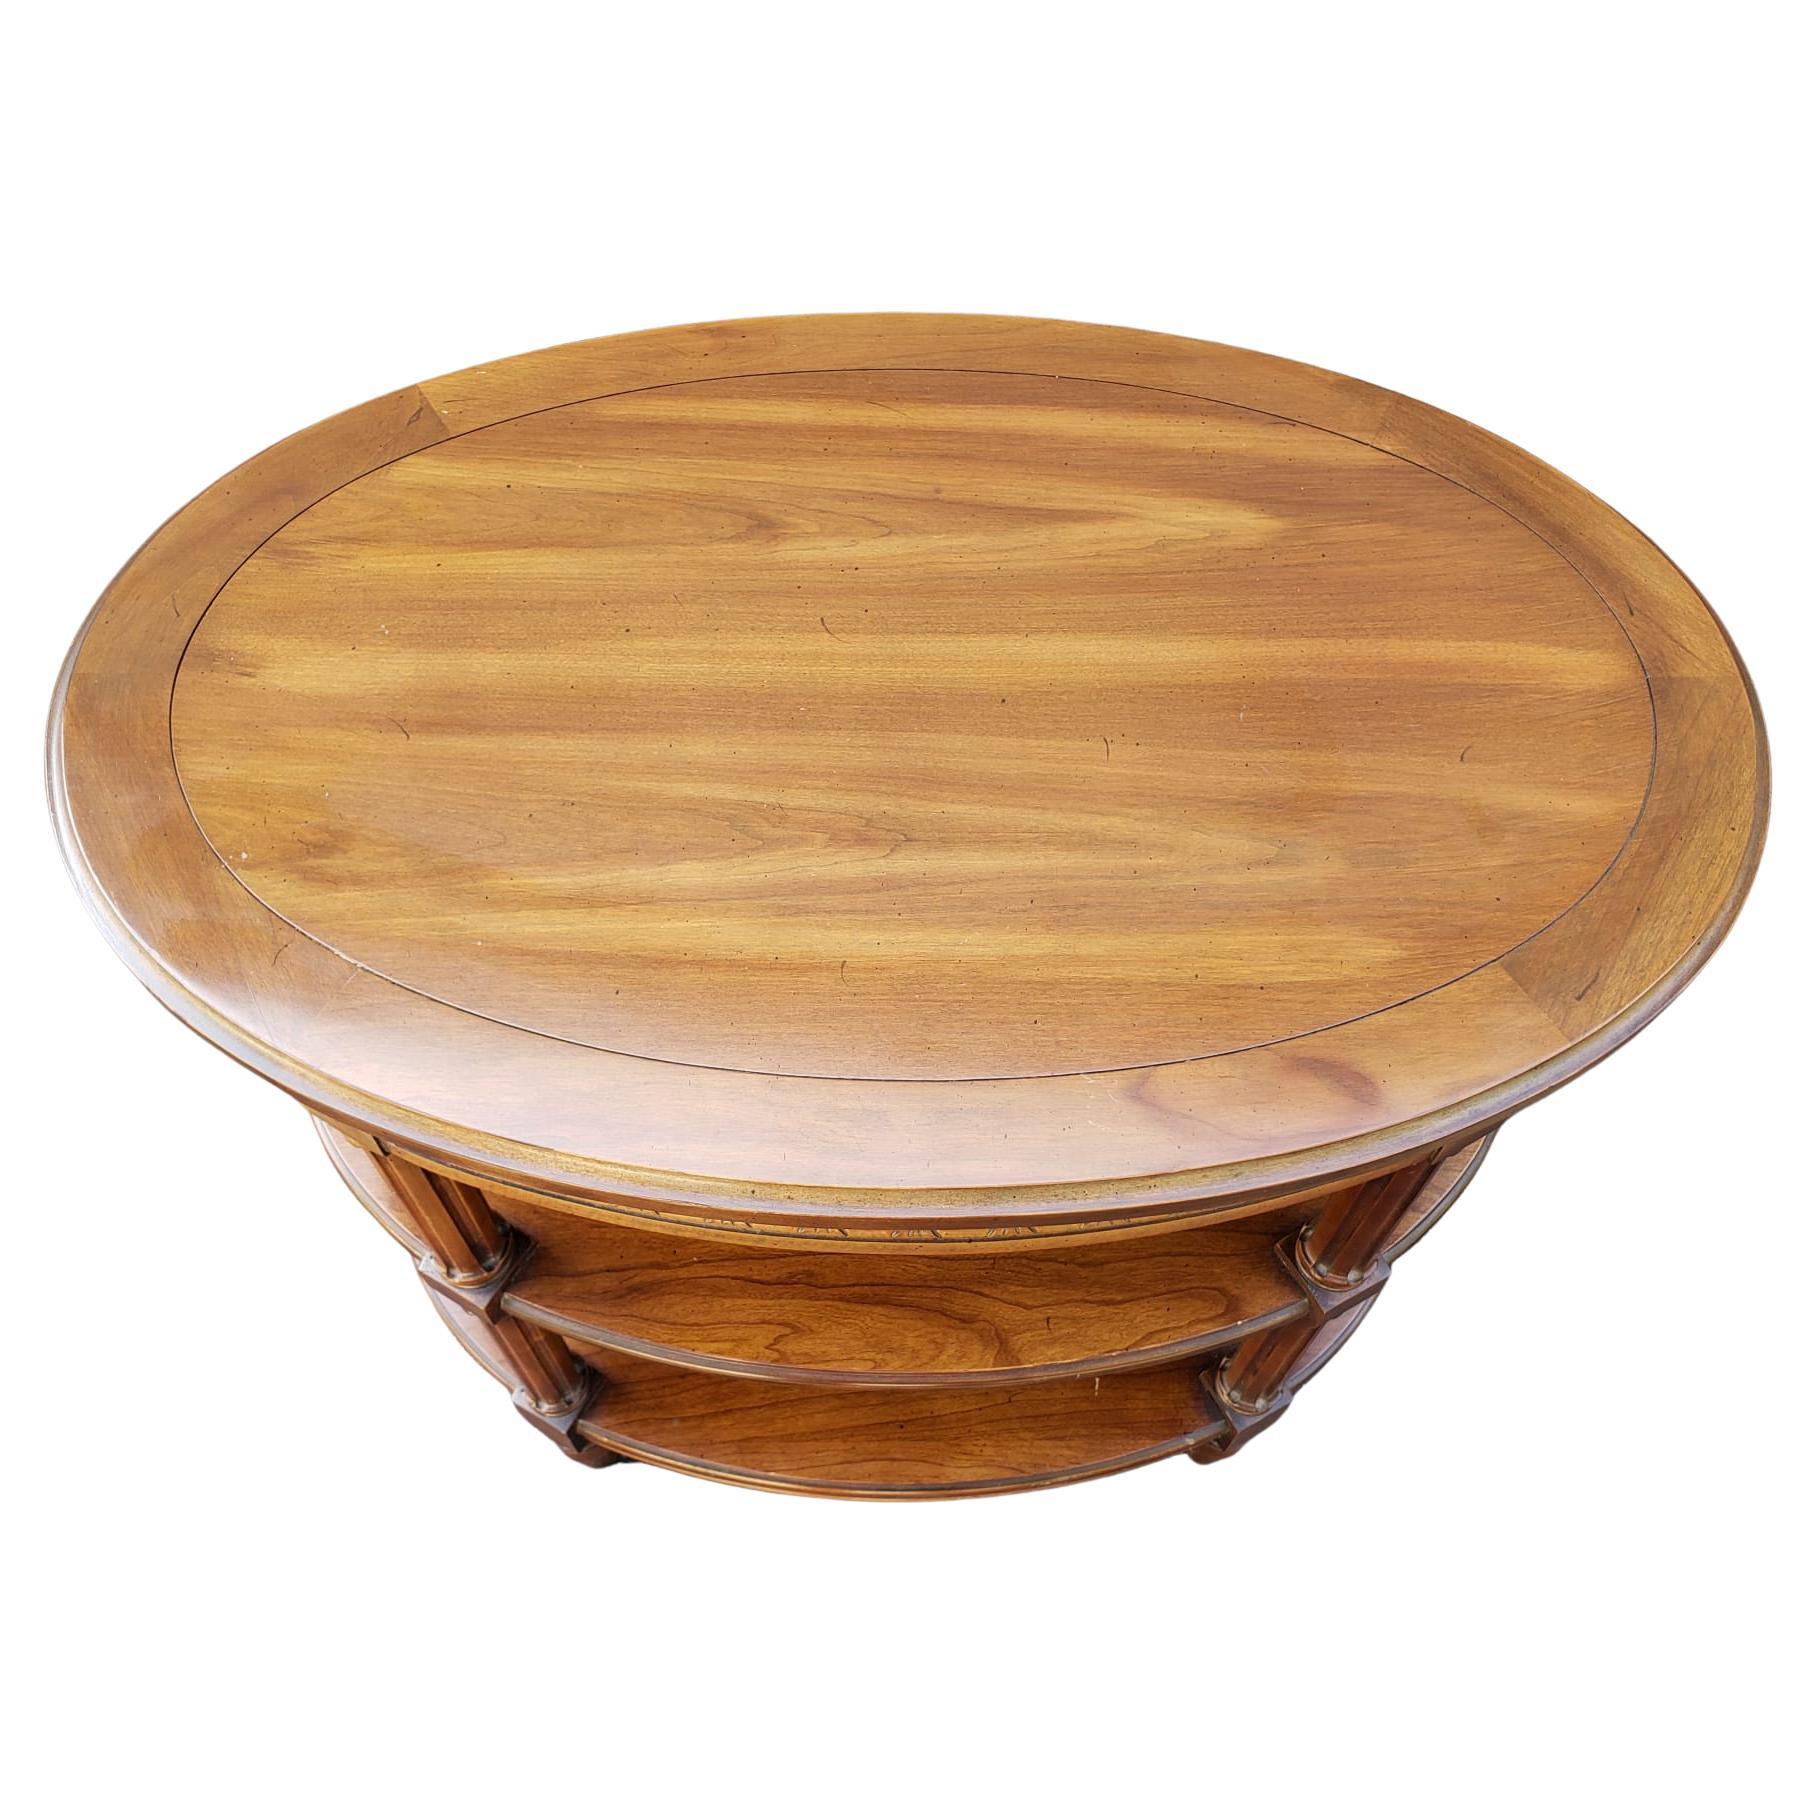 Ein amerikanischer klassischer dreistöckiger ovaler Beistelltisch aus Obstholz in sehr gutem Zustand mit handgeriebener Oberfläche. Misst 19